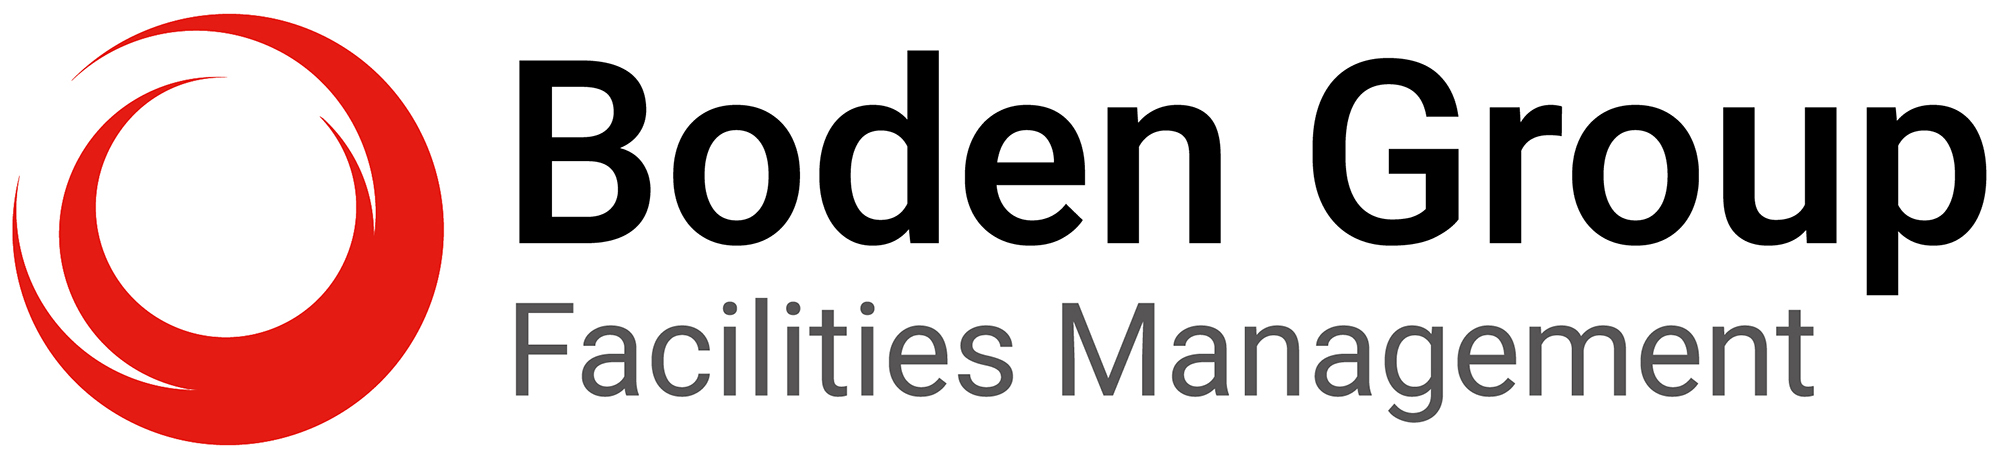 Boden Group Logo